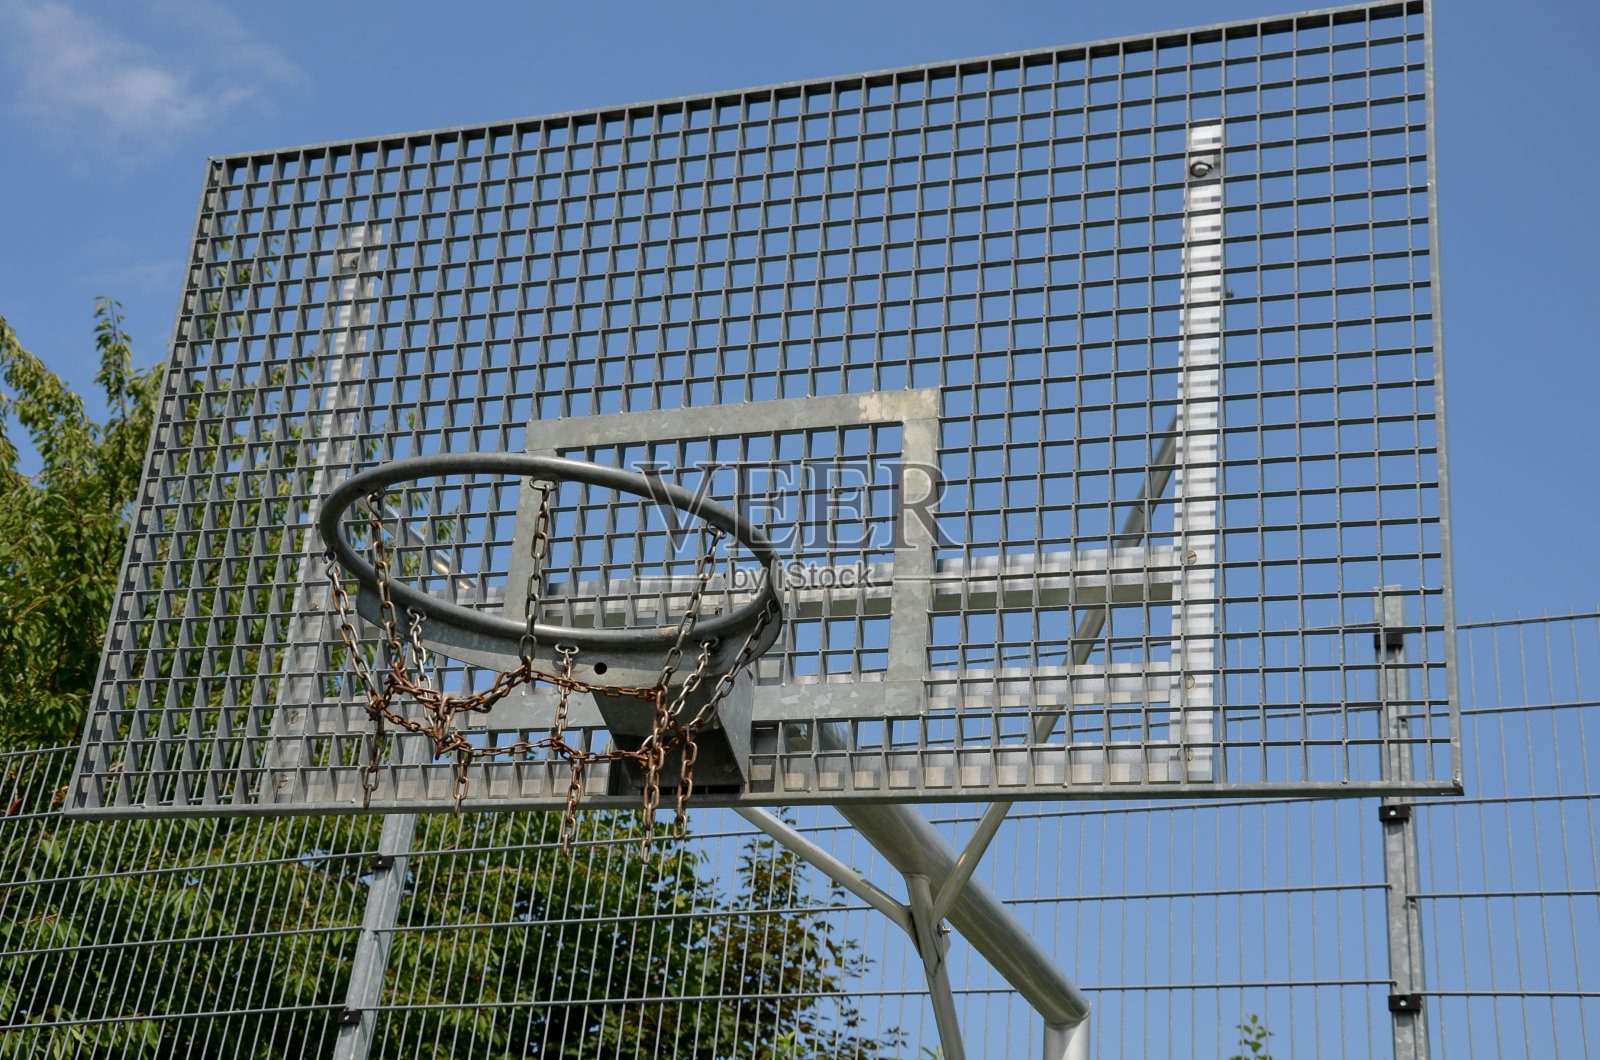 学校的多功能户外球类运动场地。绿色人造草皮从塑料地毯与线条。篮球圈和足球球门。在高高的网和护栏周围照片摄影图片